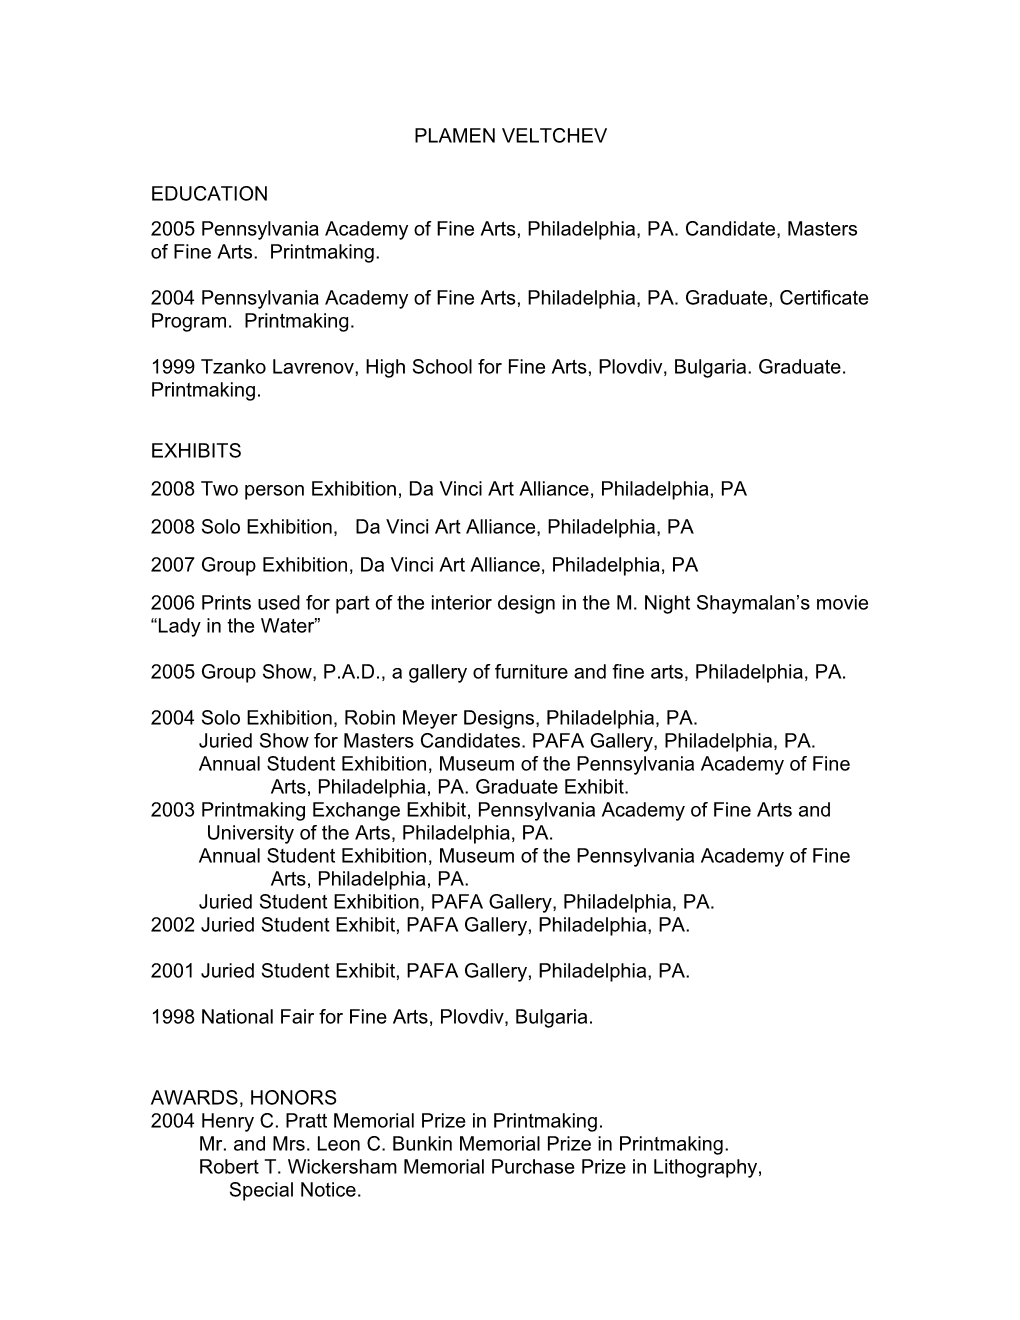 2004 Pennsylvania Academy of Fine Arts, Philadelphia, PA. Graduate, Certificate Program